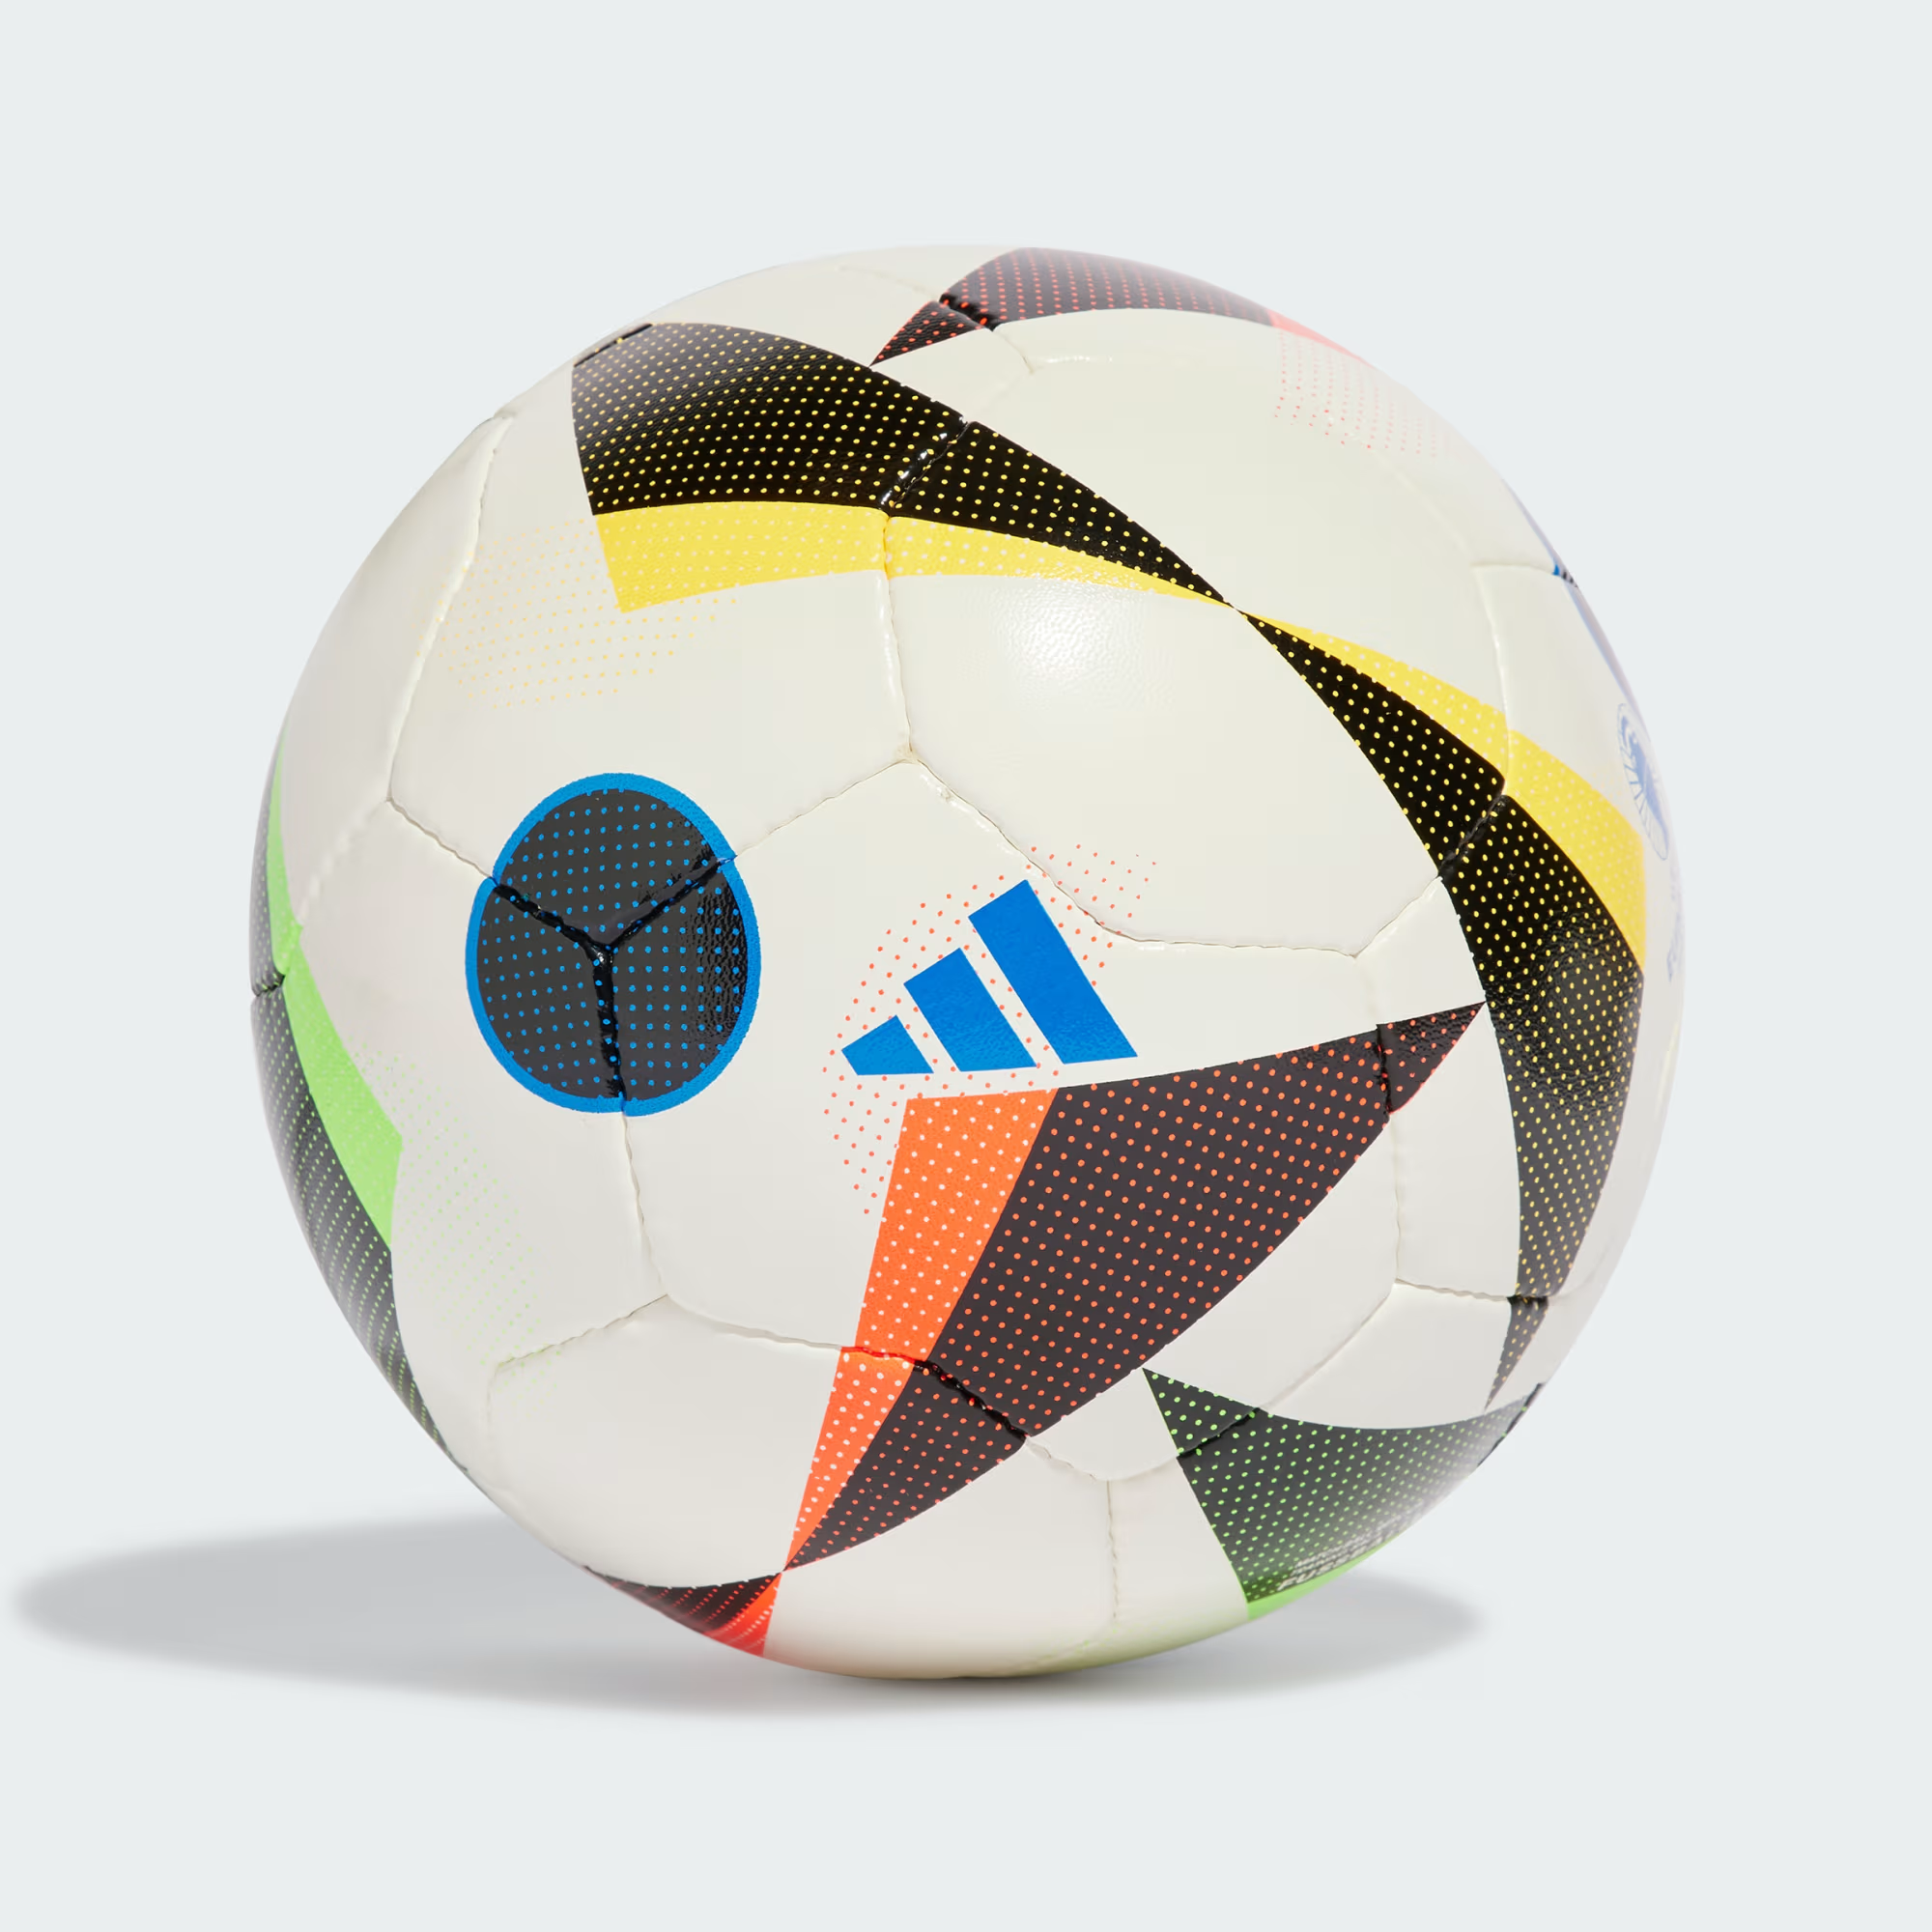 Click jogos futebol: Encontre Promoções e o Menor Preço No Zoom